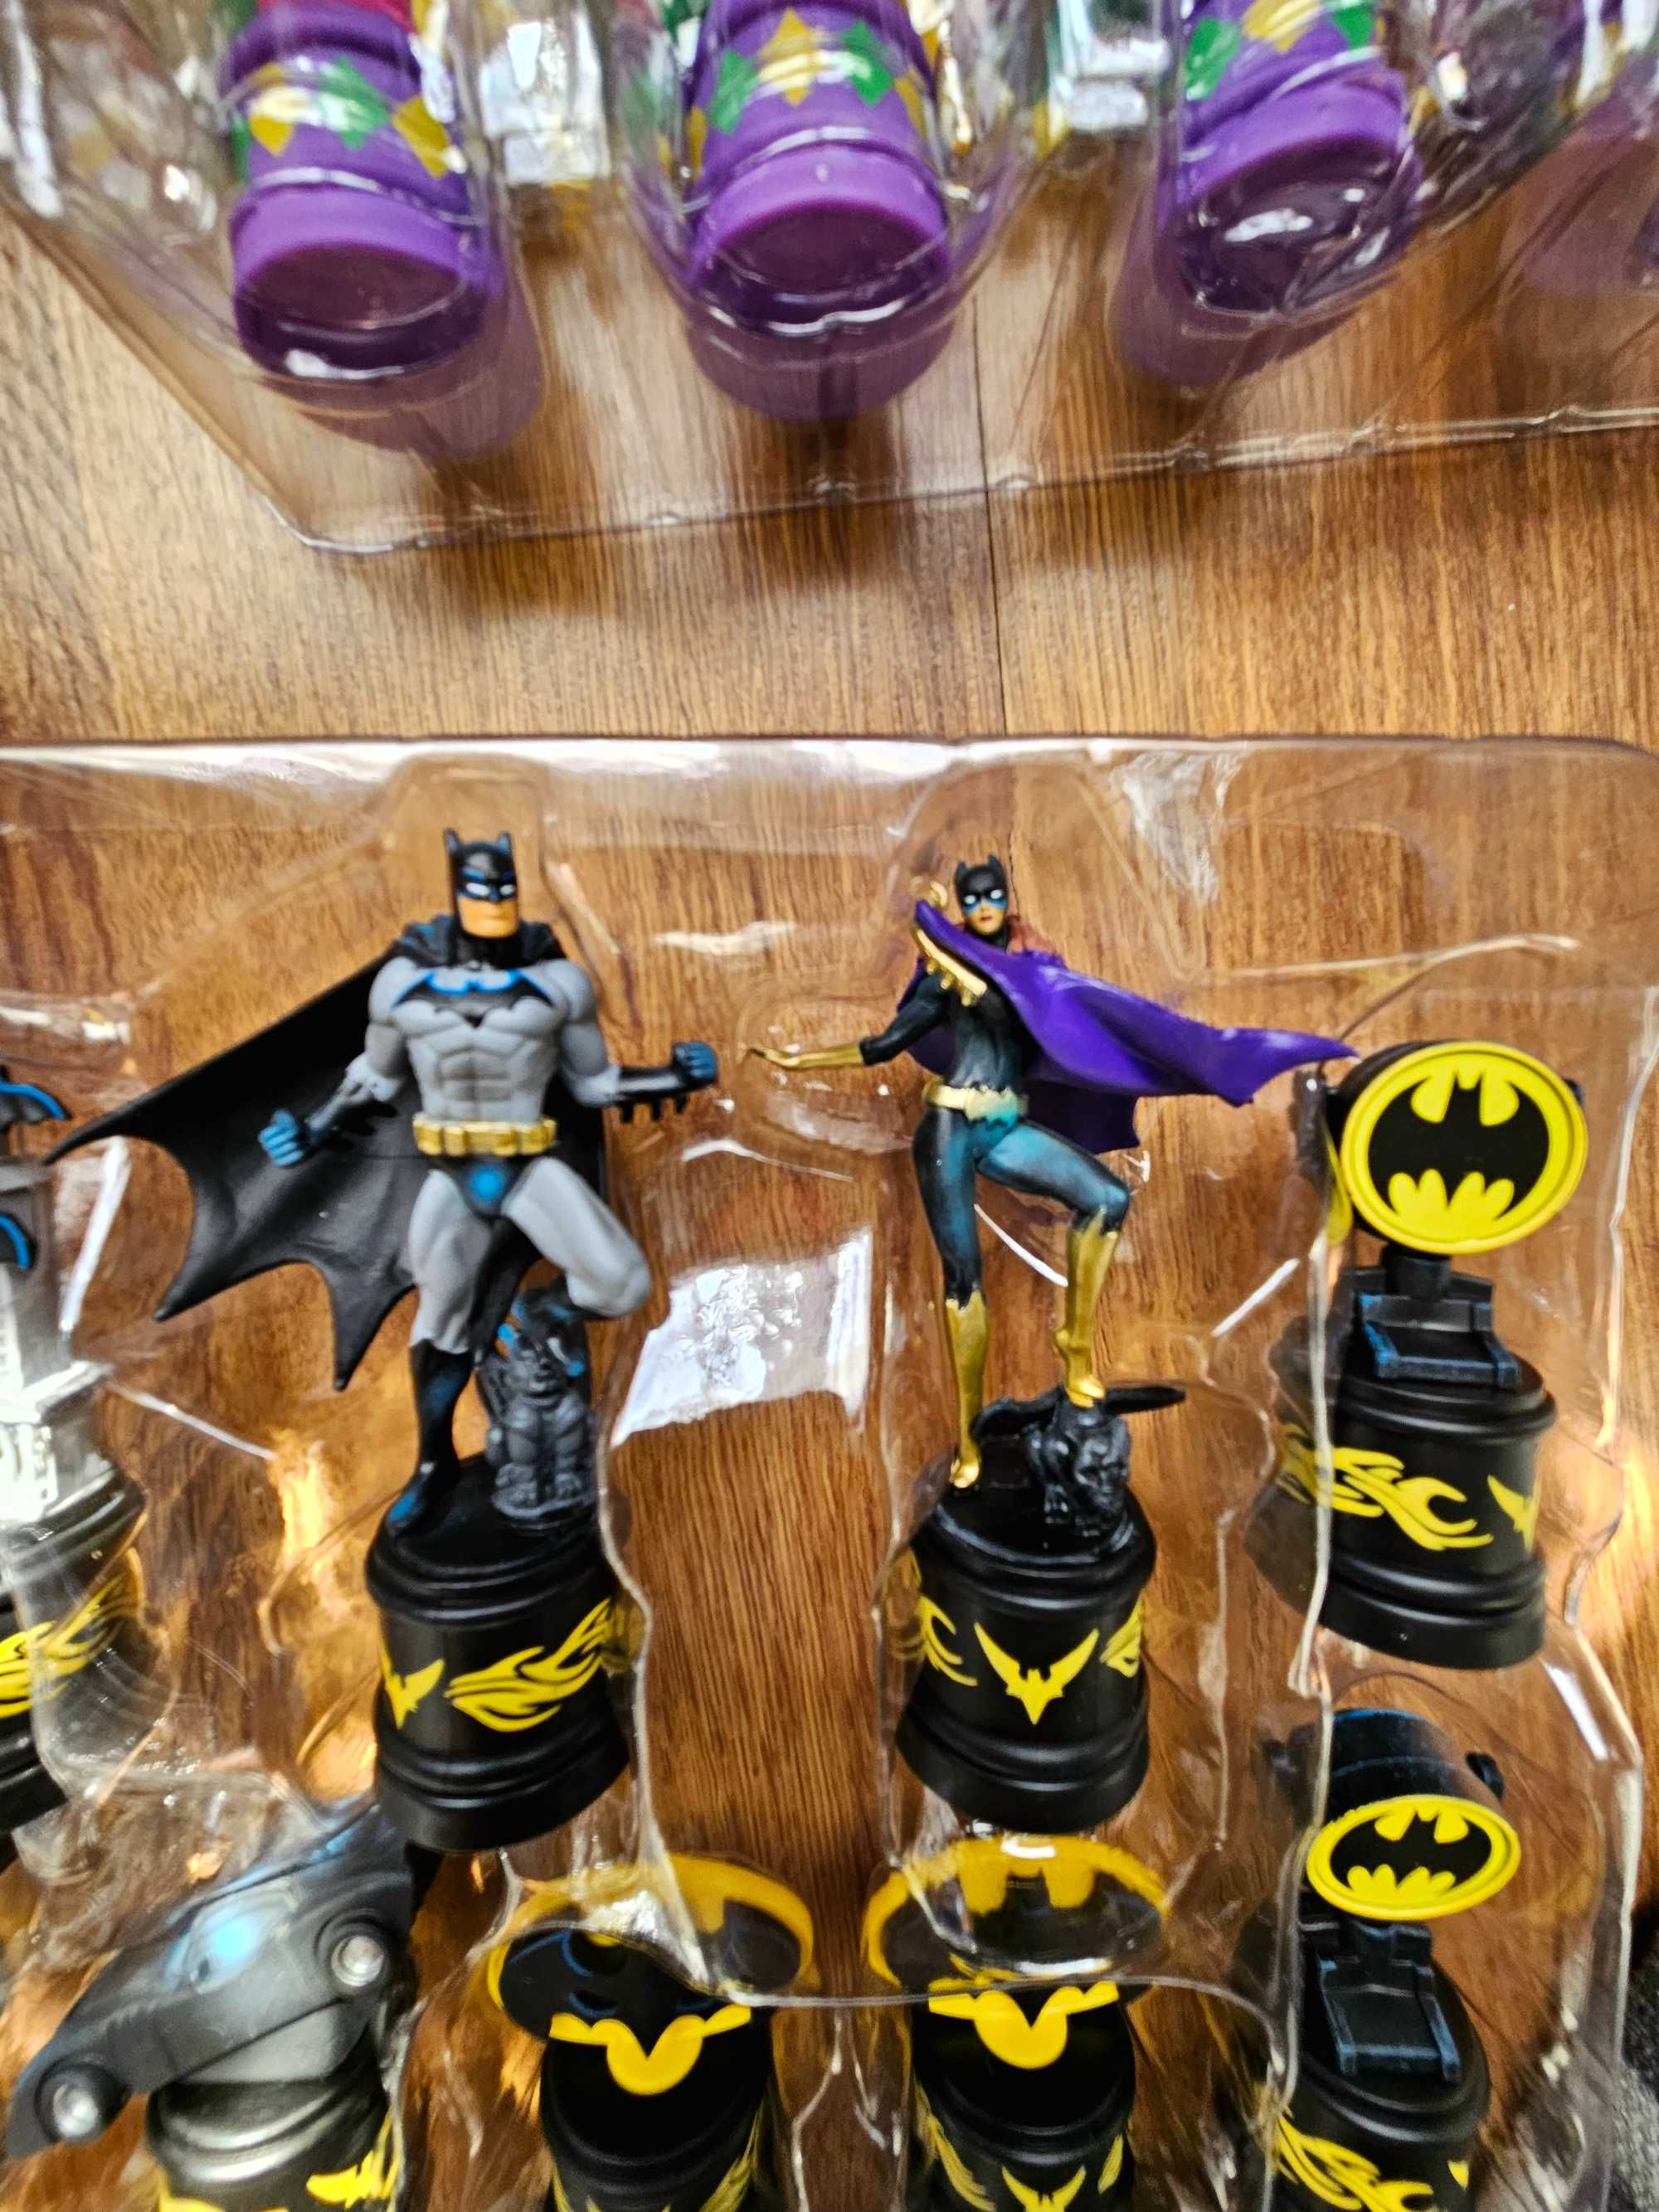 Szachy Batman the Joker Chess set